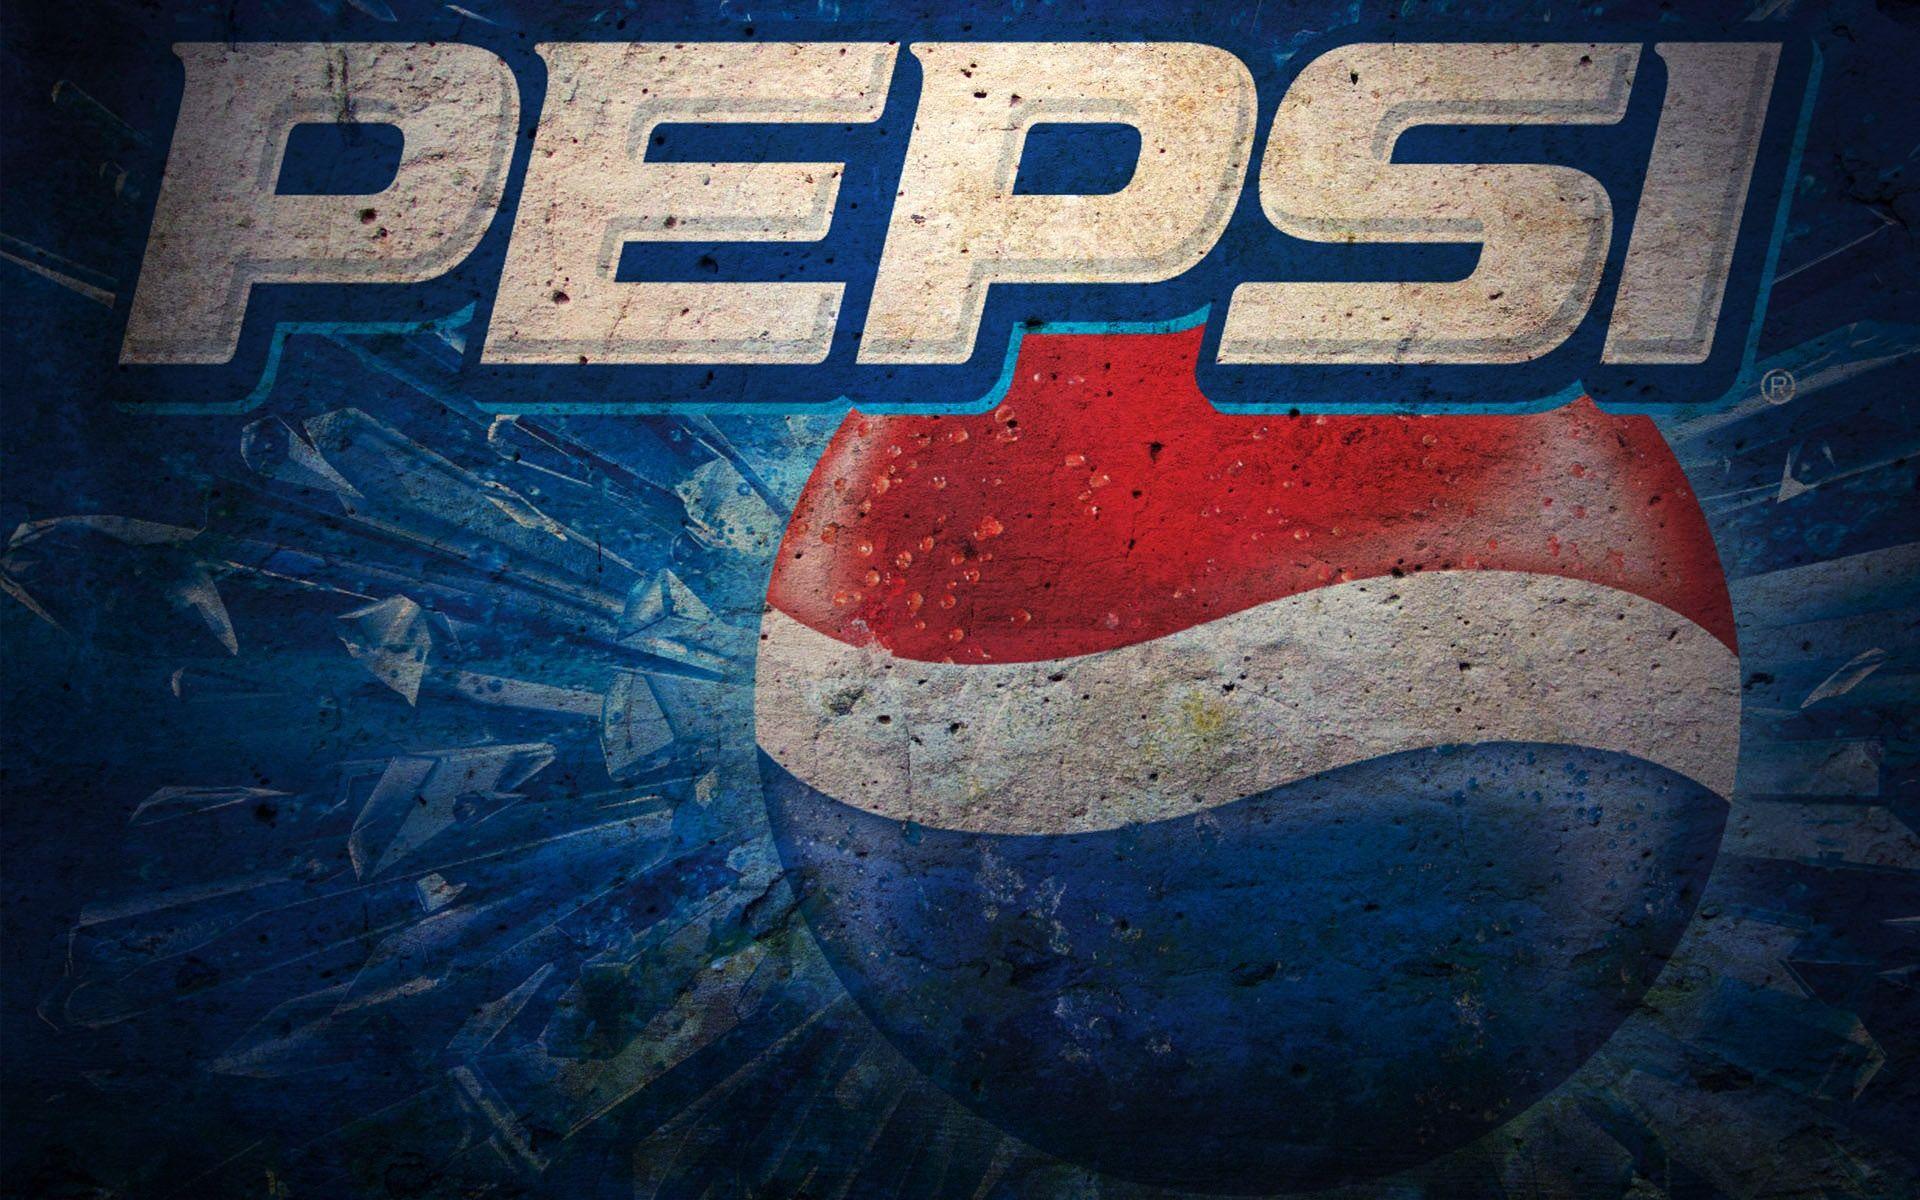 Pepsi wallpaper. HD Wallpaper. Pepsi and Wallpaper